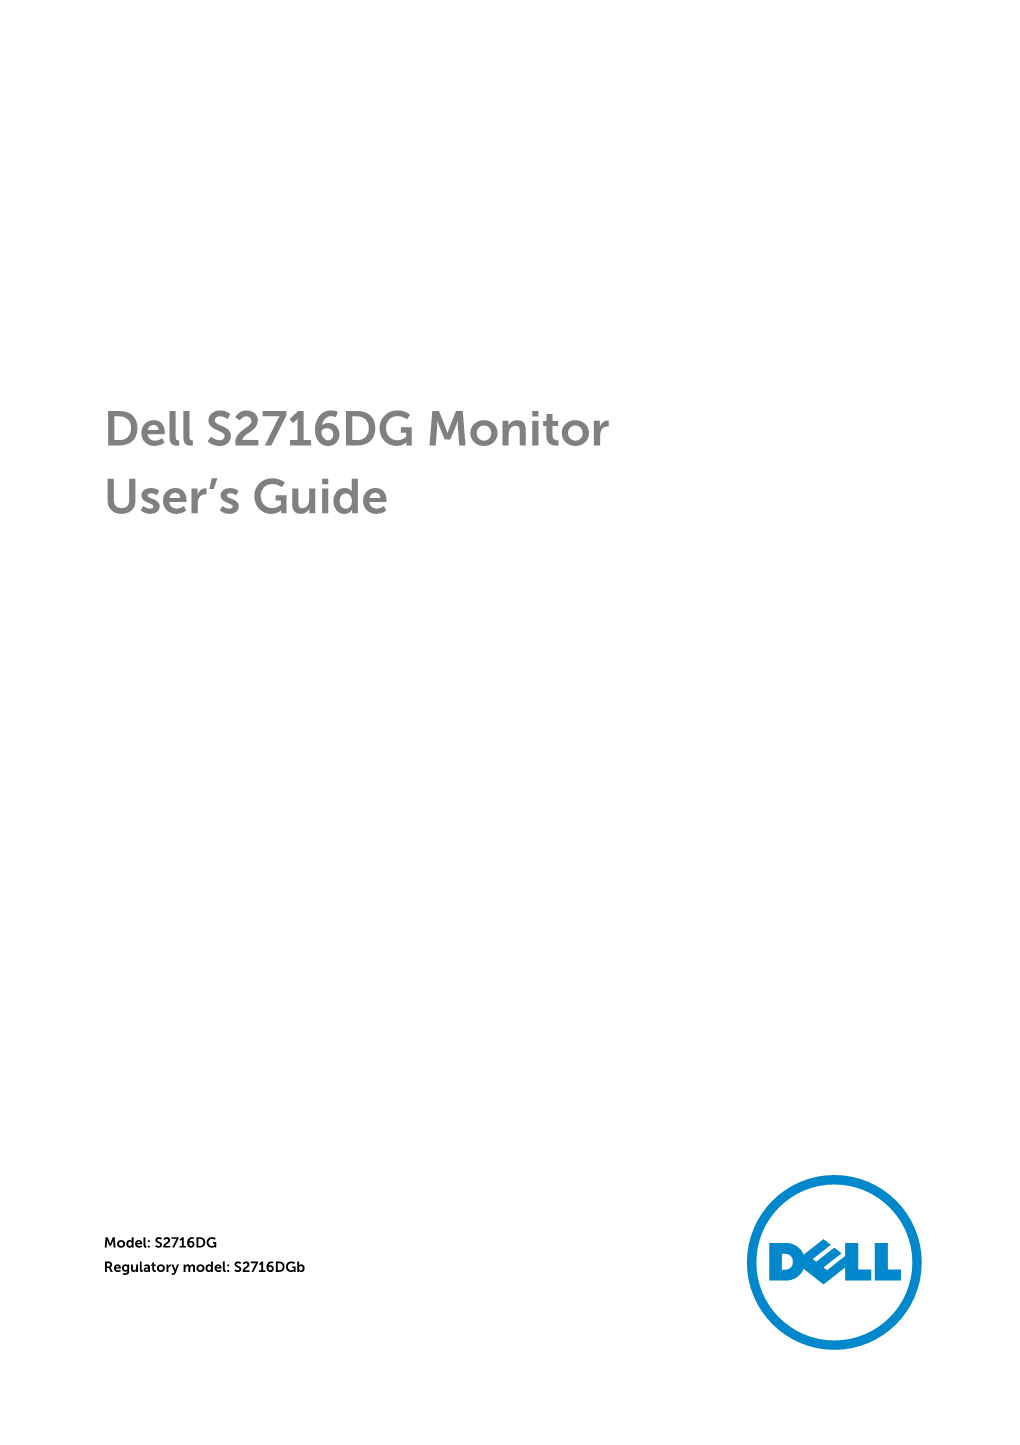 Dell S2716DG Monitor User's Guide